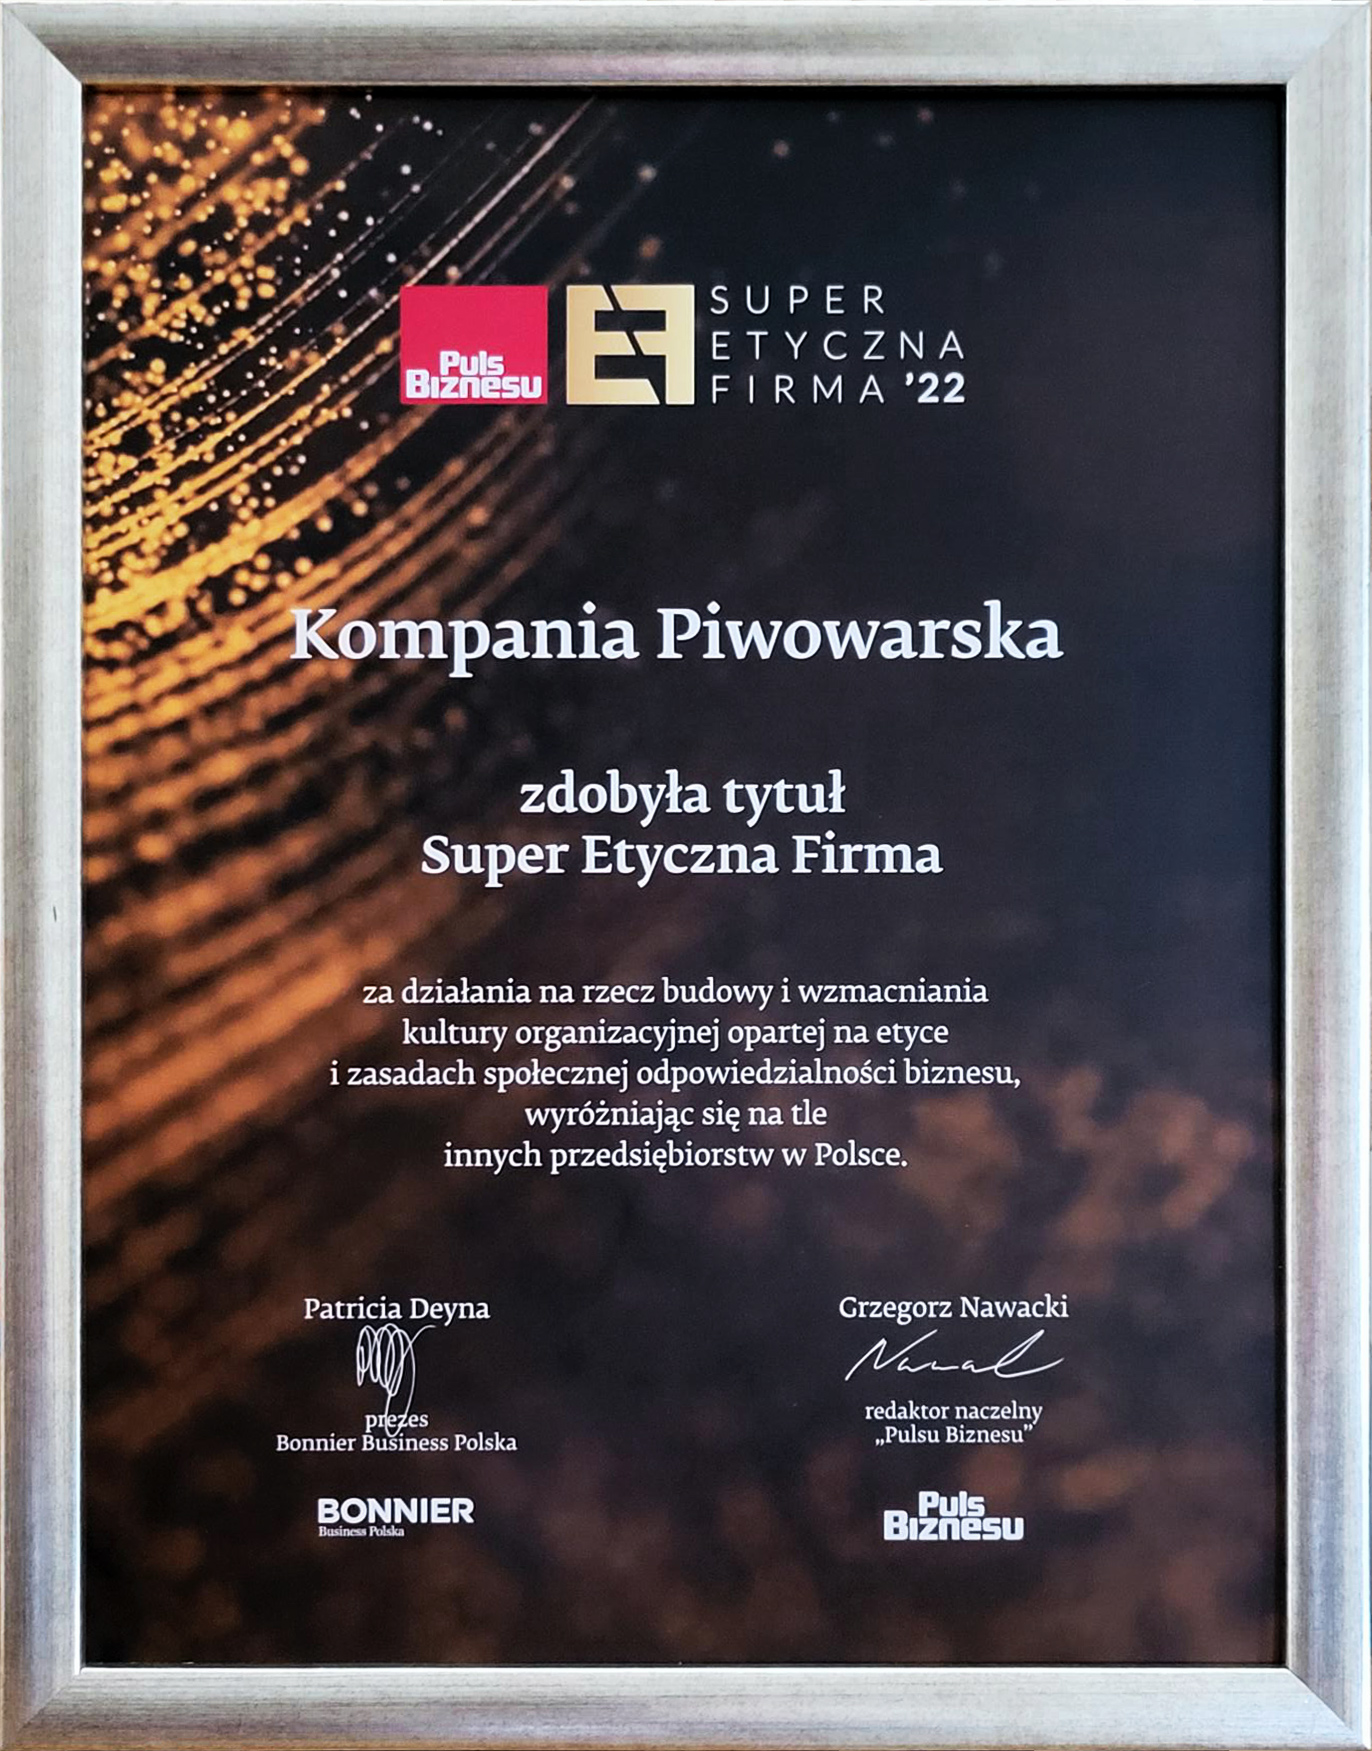 Kompania Piwowarska „Super Etyczną Firmą 2022”